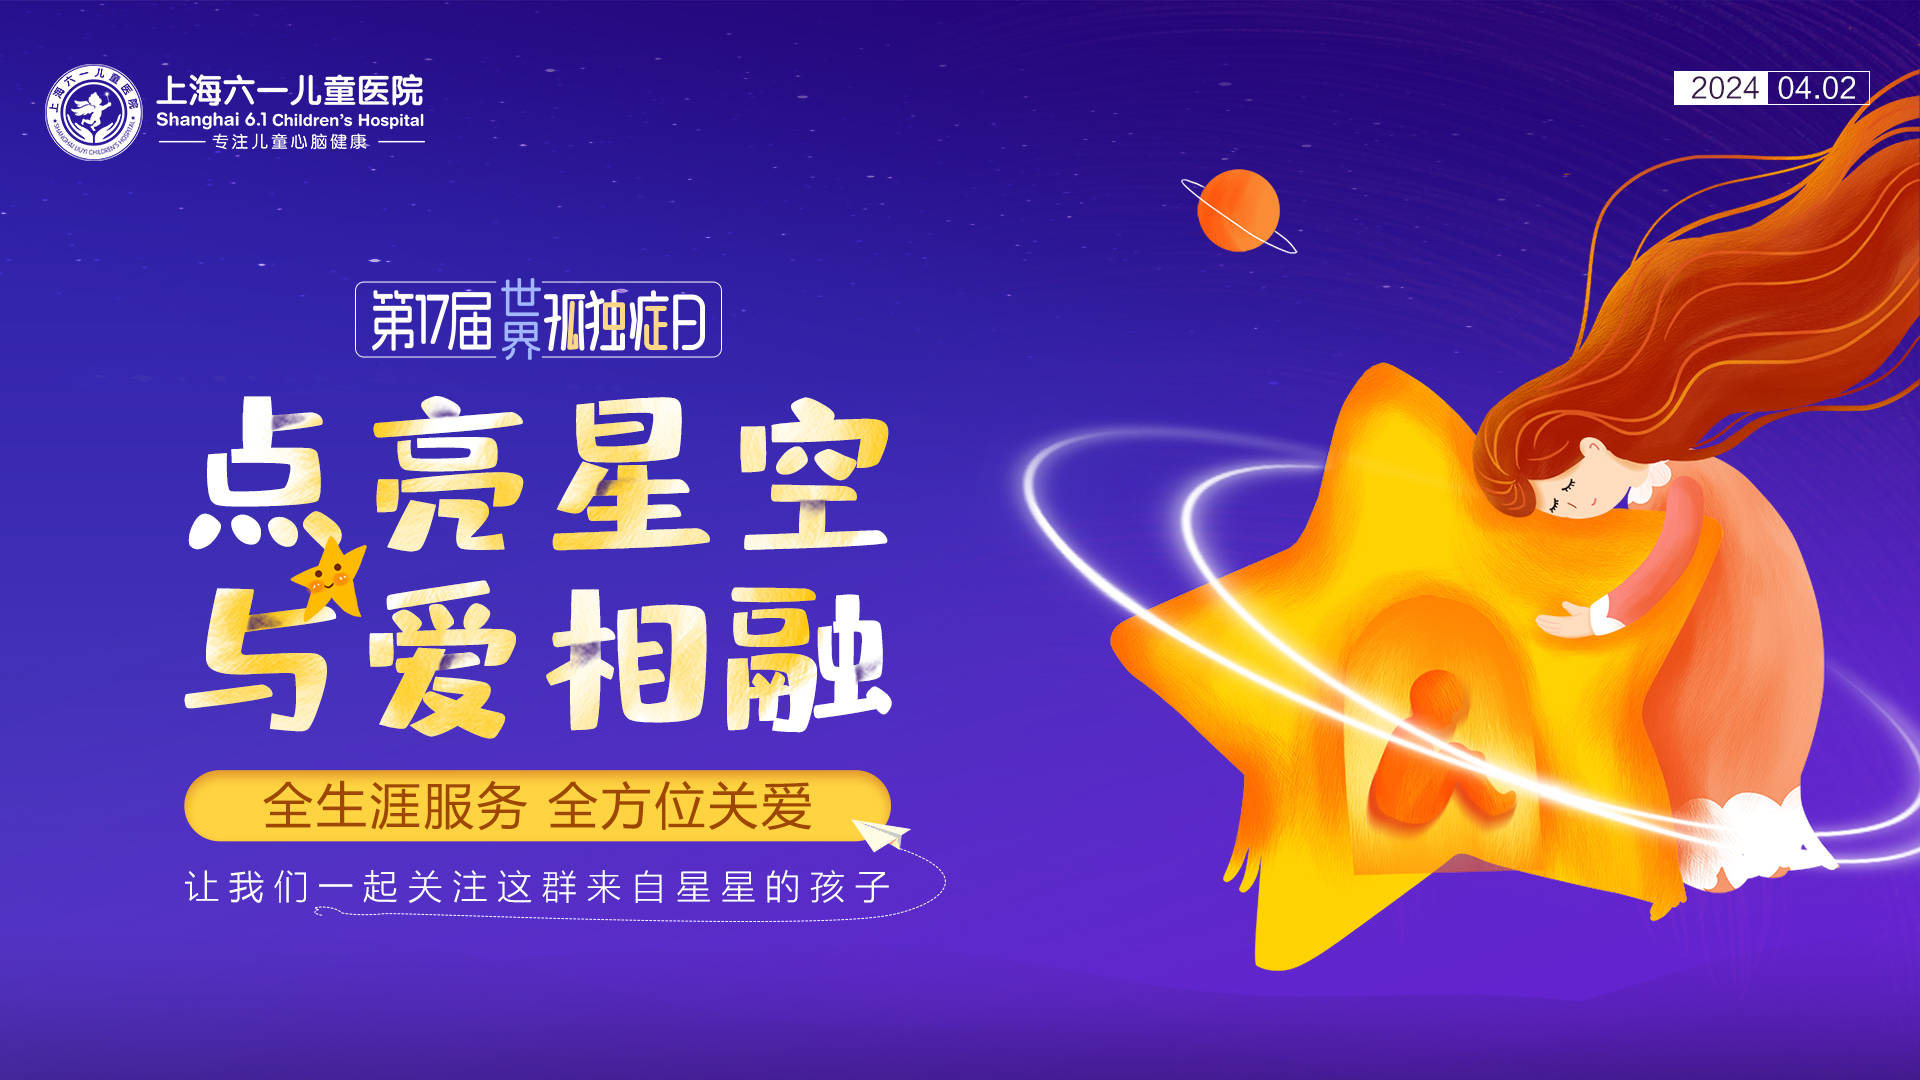 用爱温暖“星星的孩子”—上海六一儿童医院举办世界自闭症日主题公益活动